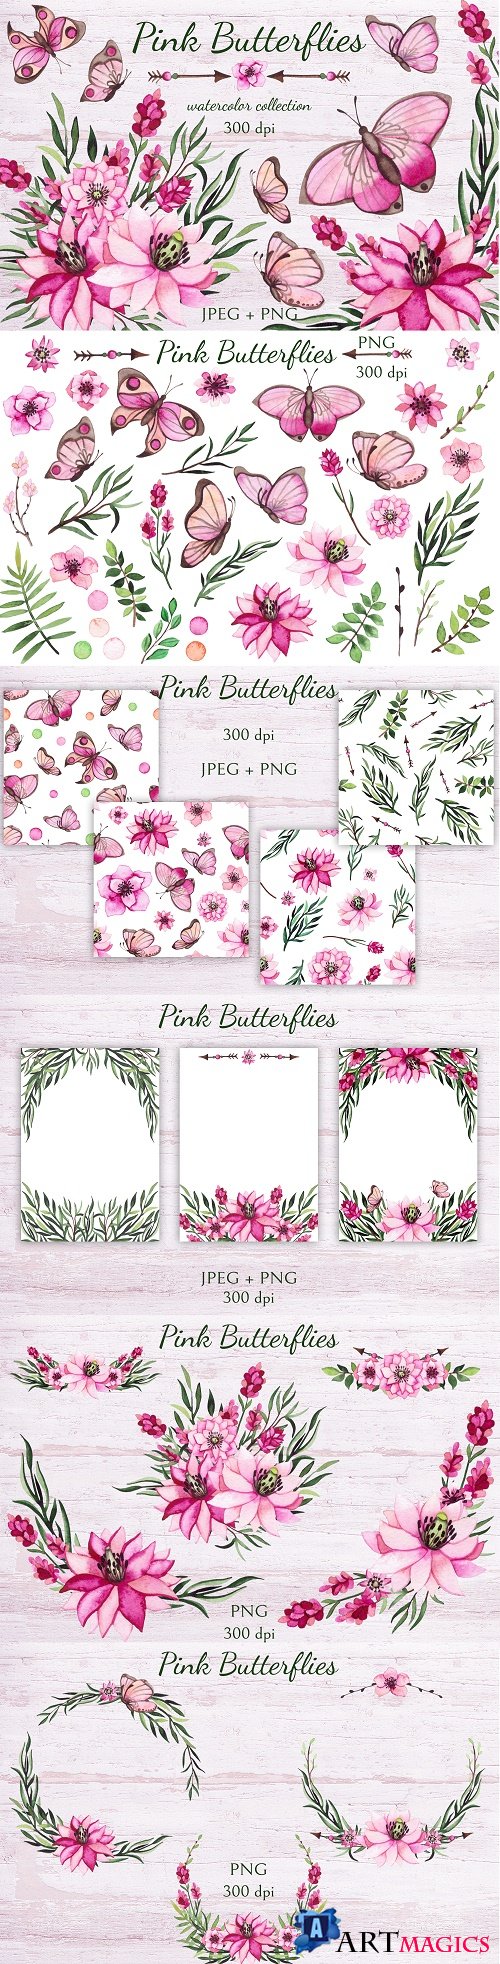 Designbundles - Pink Butterflies - 99266